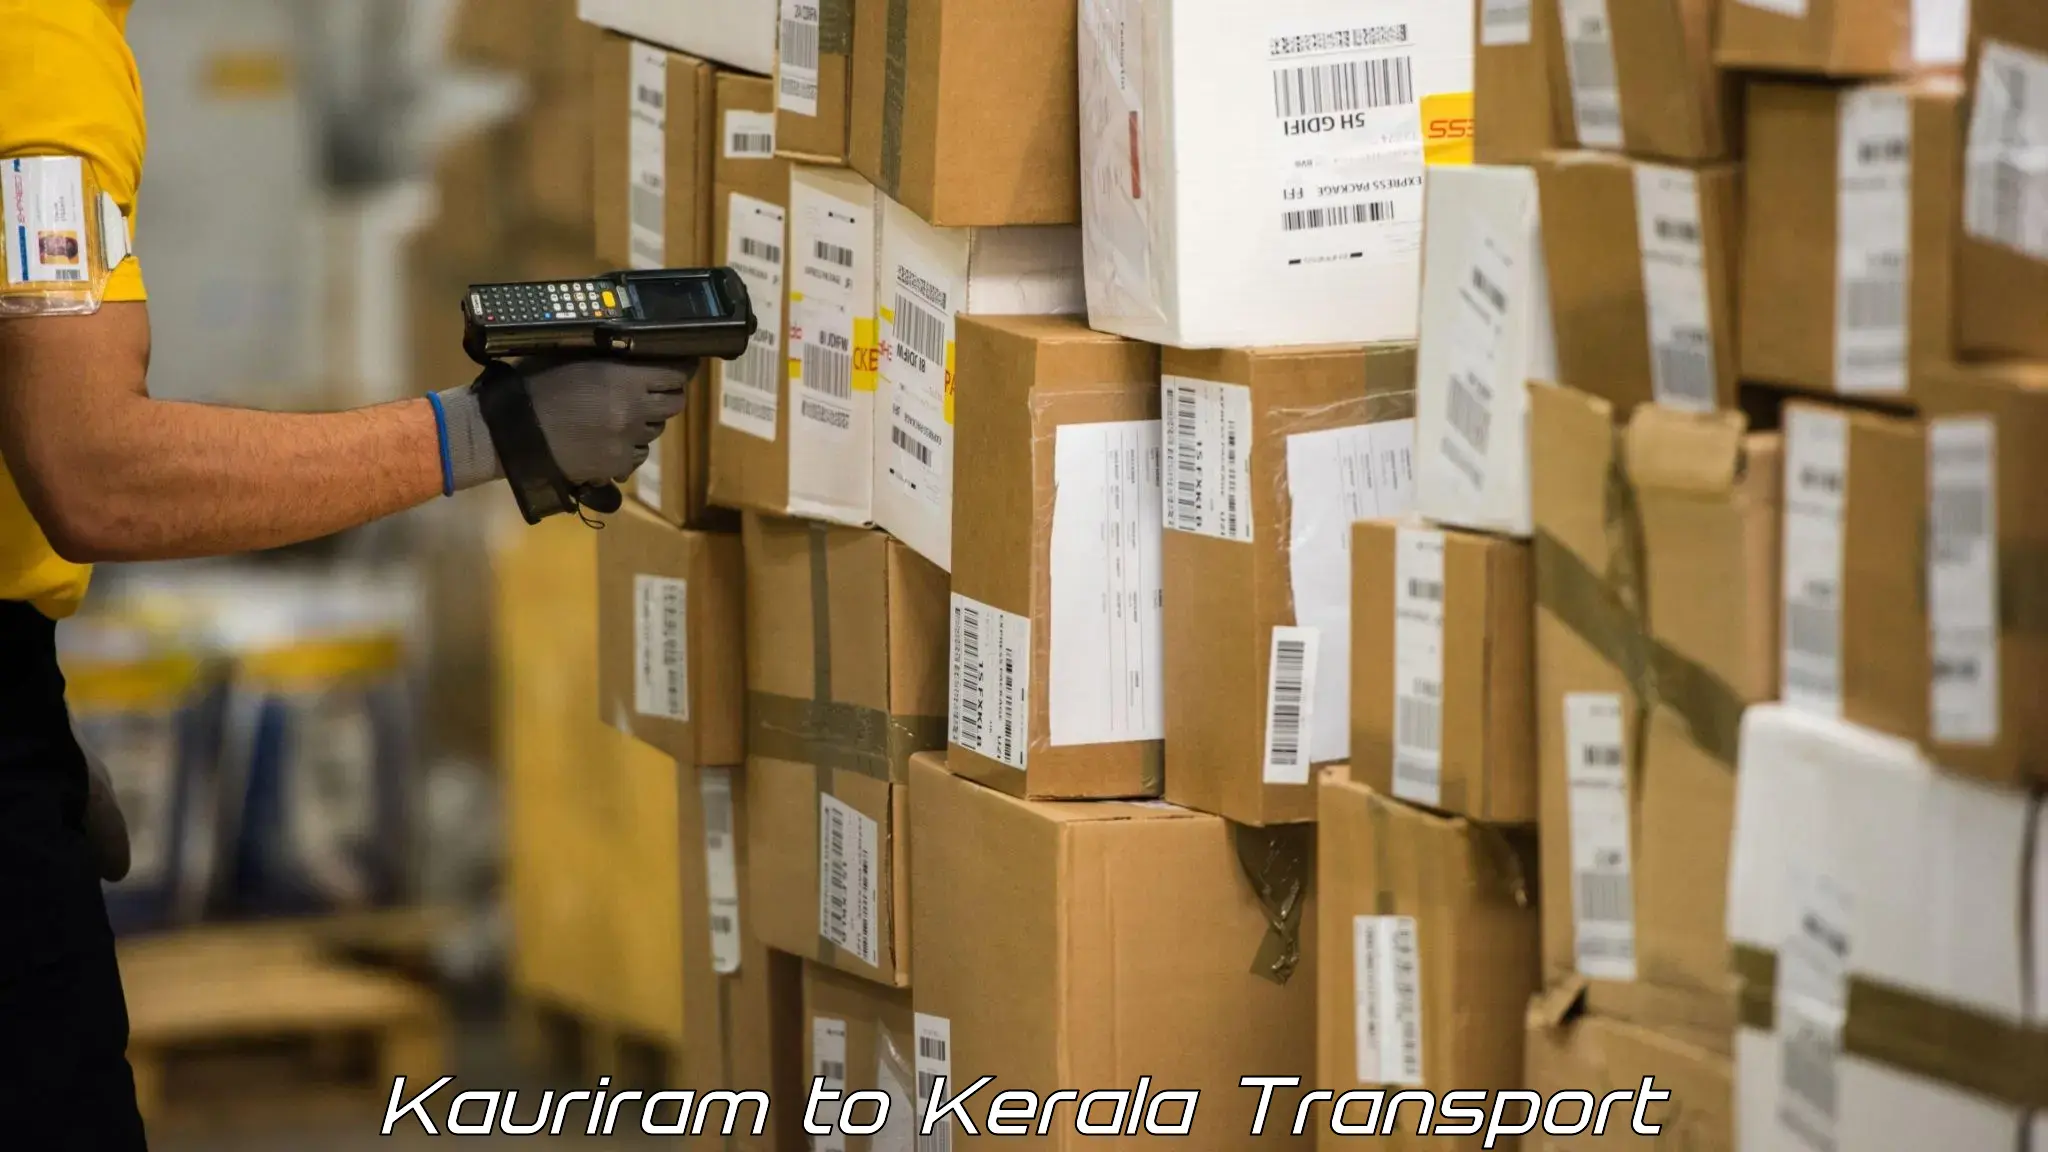 Truck transport companies in India Kauriram to Kochi